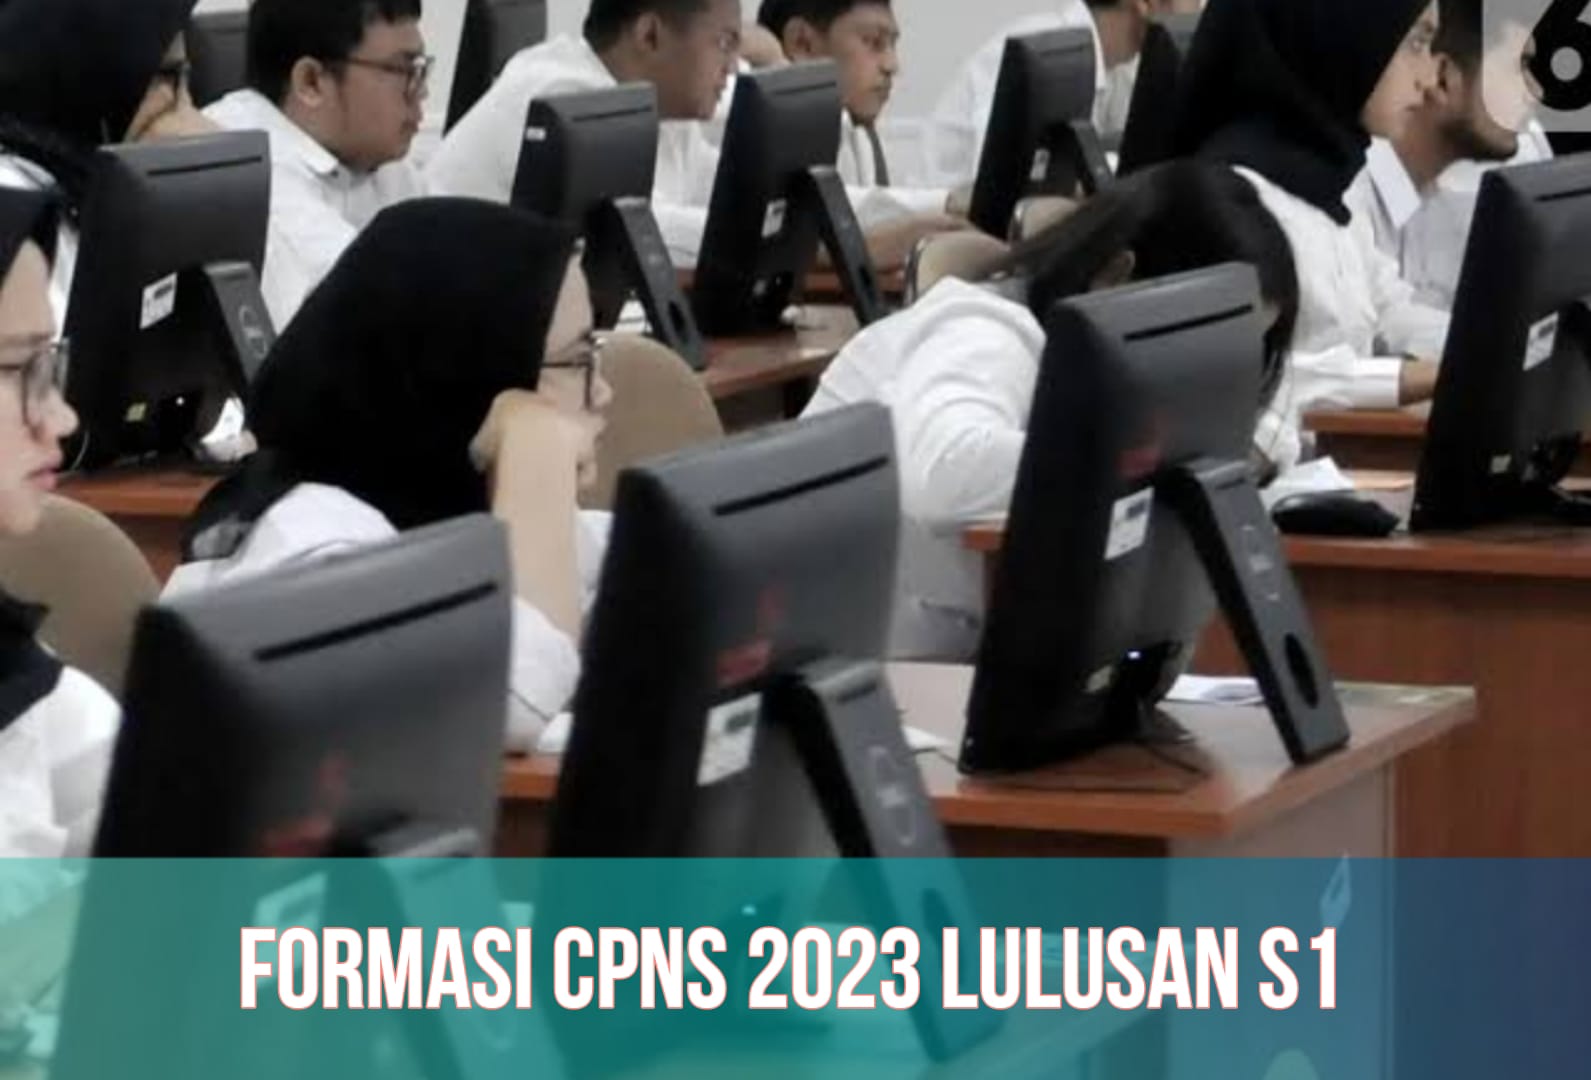 Formasi CPNS 2023, Cek Syarat untuk Lulusan S1, Lengkap dengan Link Pendaftaran